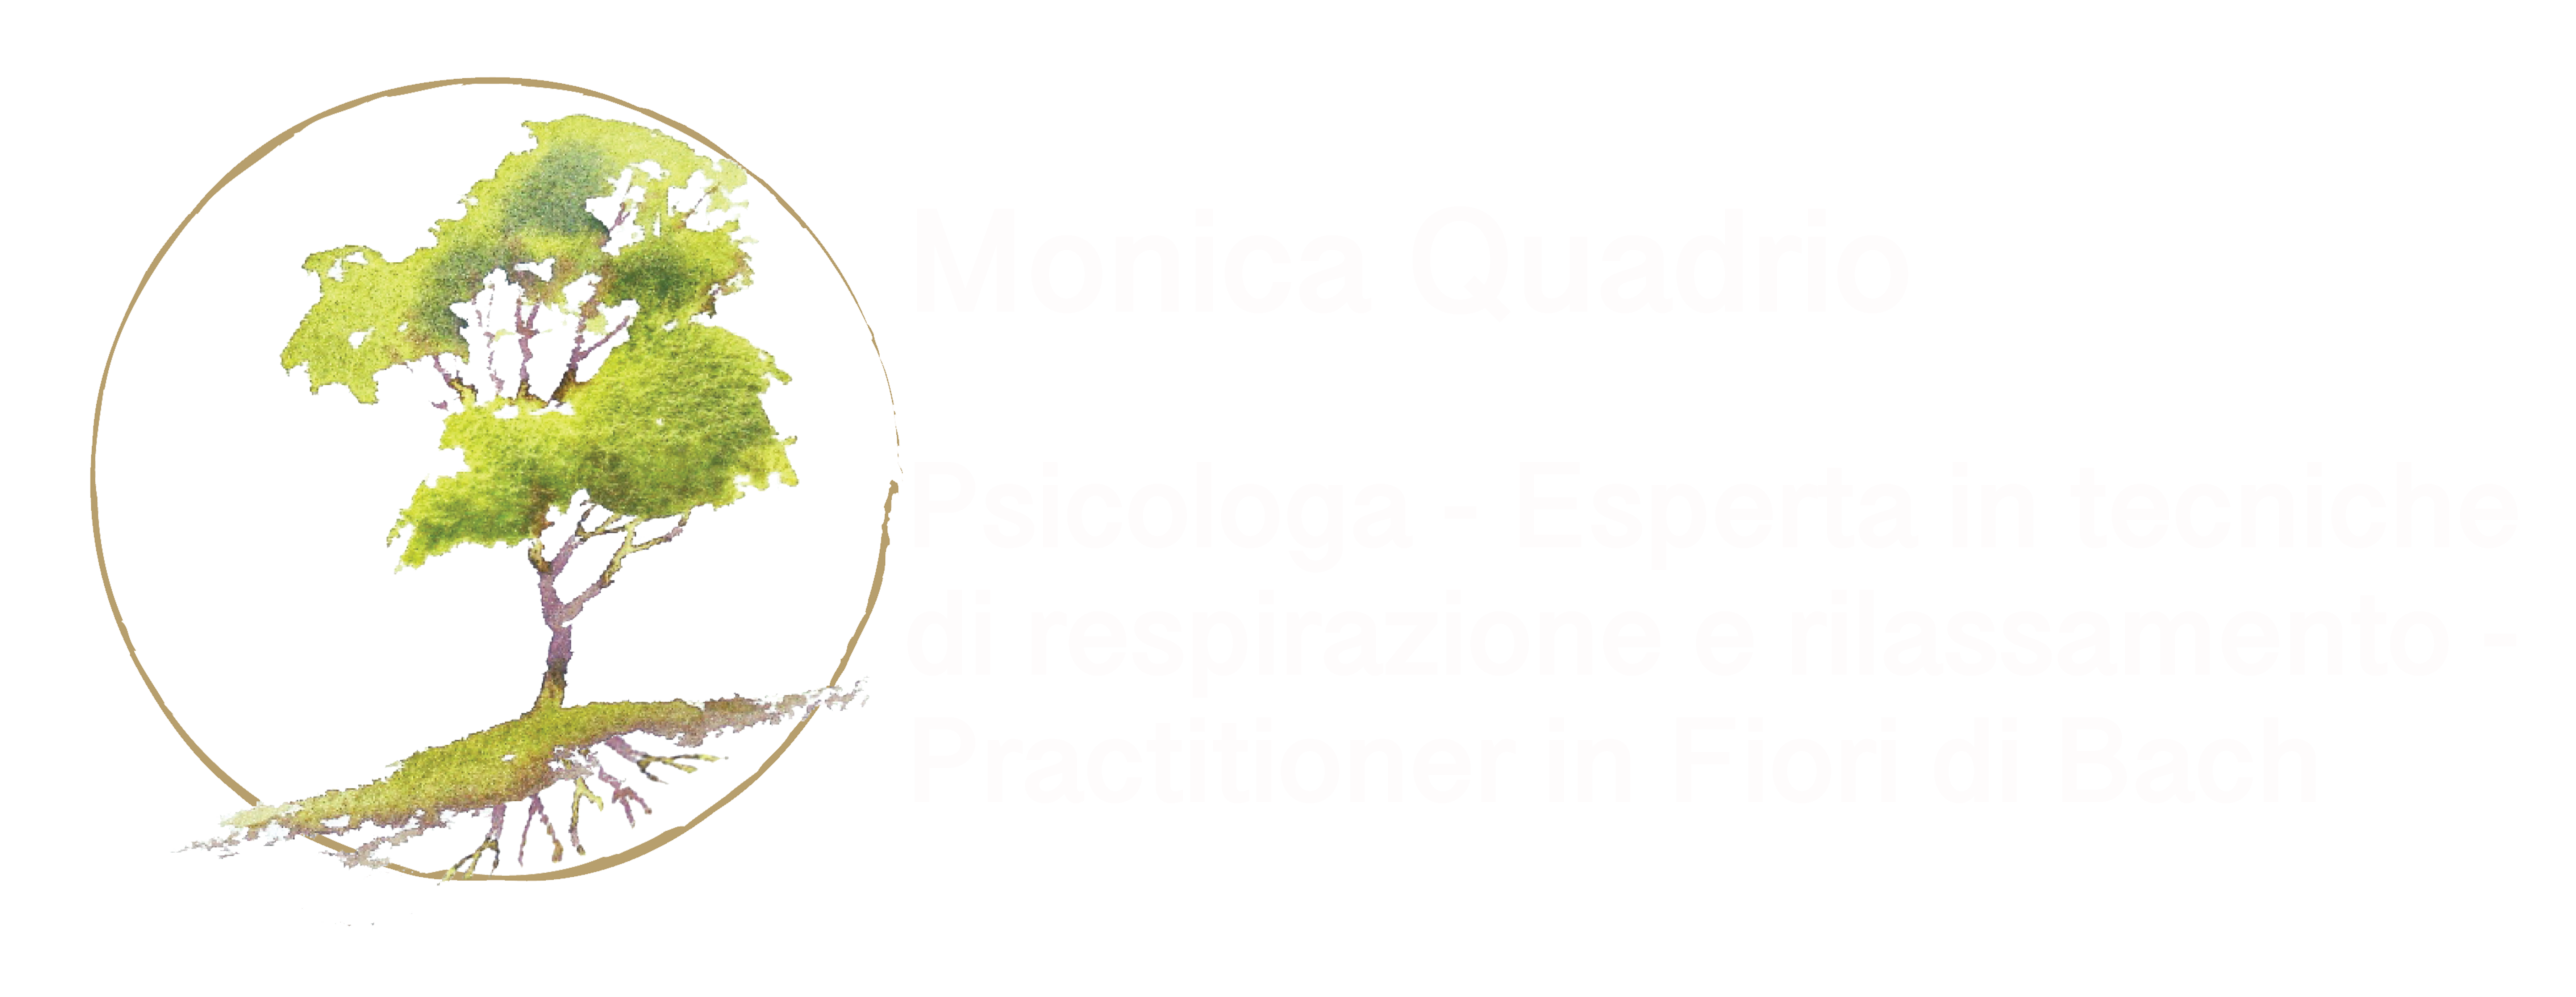 Monica Quadrio